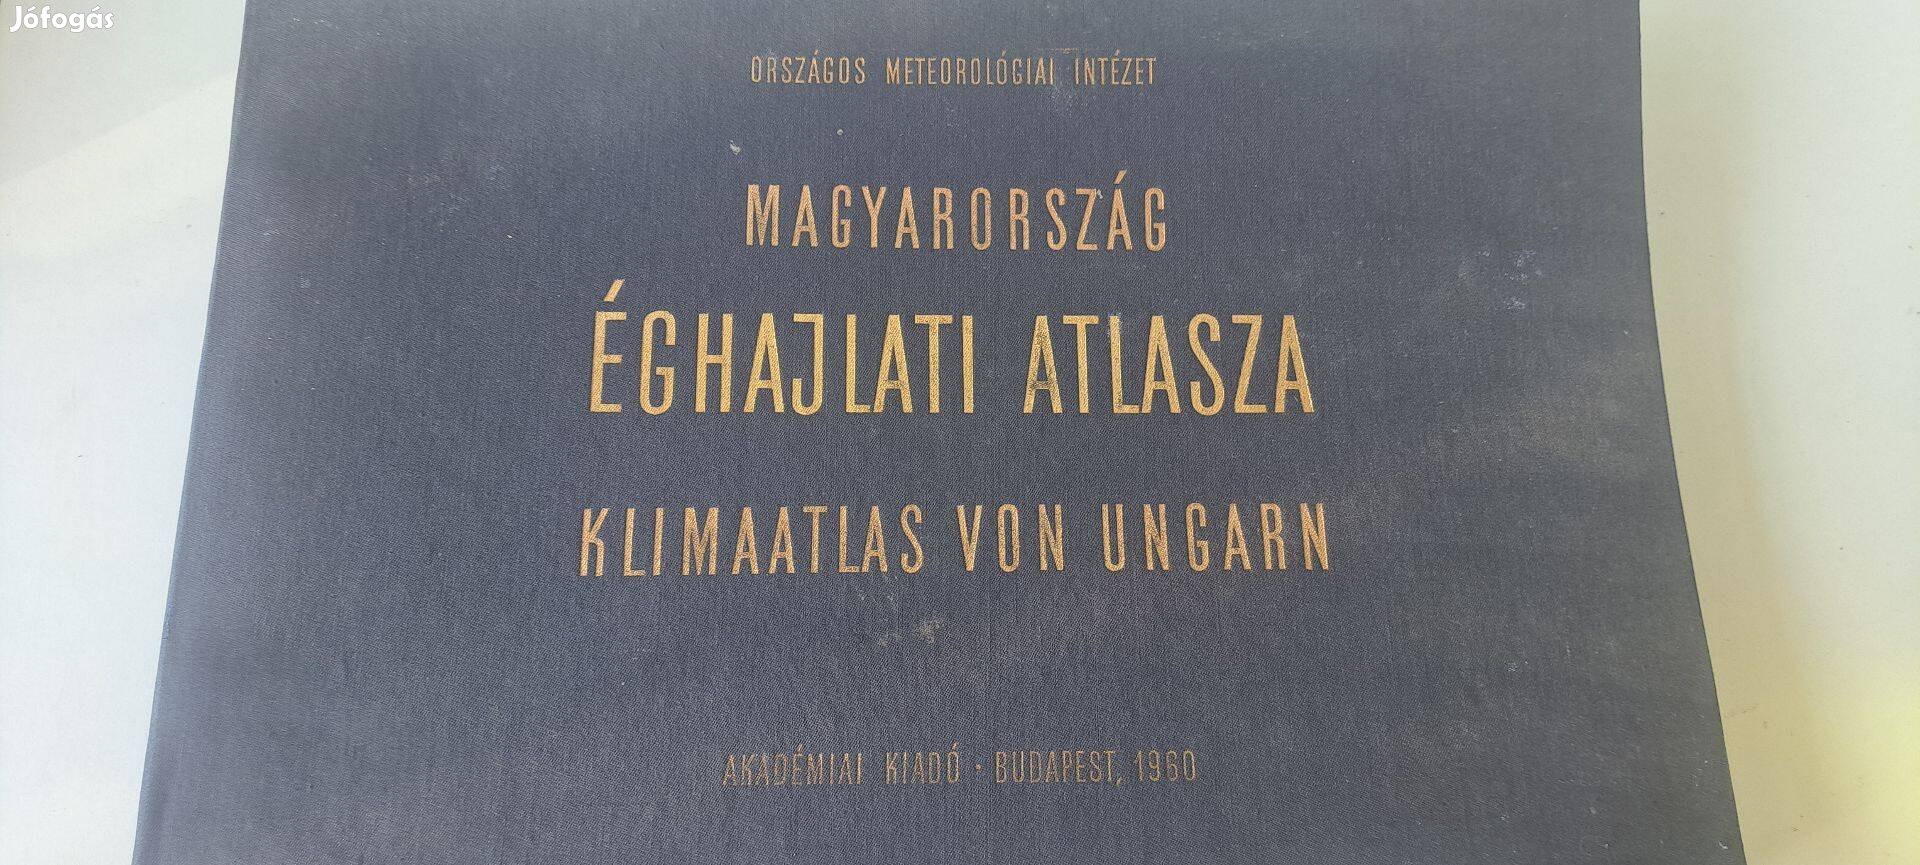 Magyarország Éghajlati Atlasza.Országos meteorológiai intézet